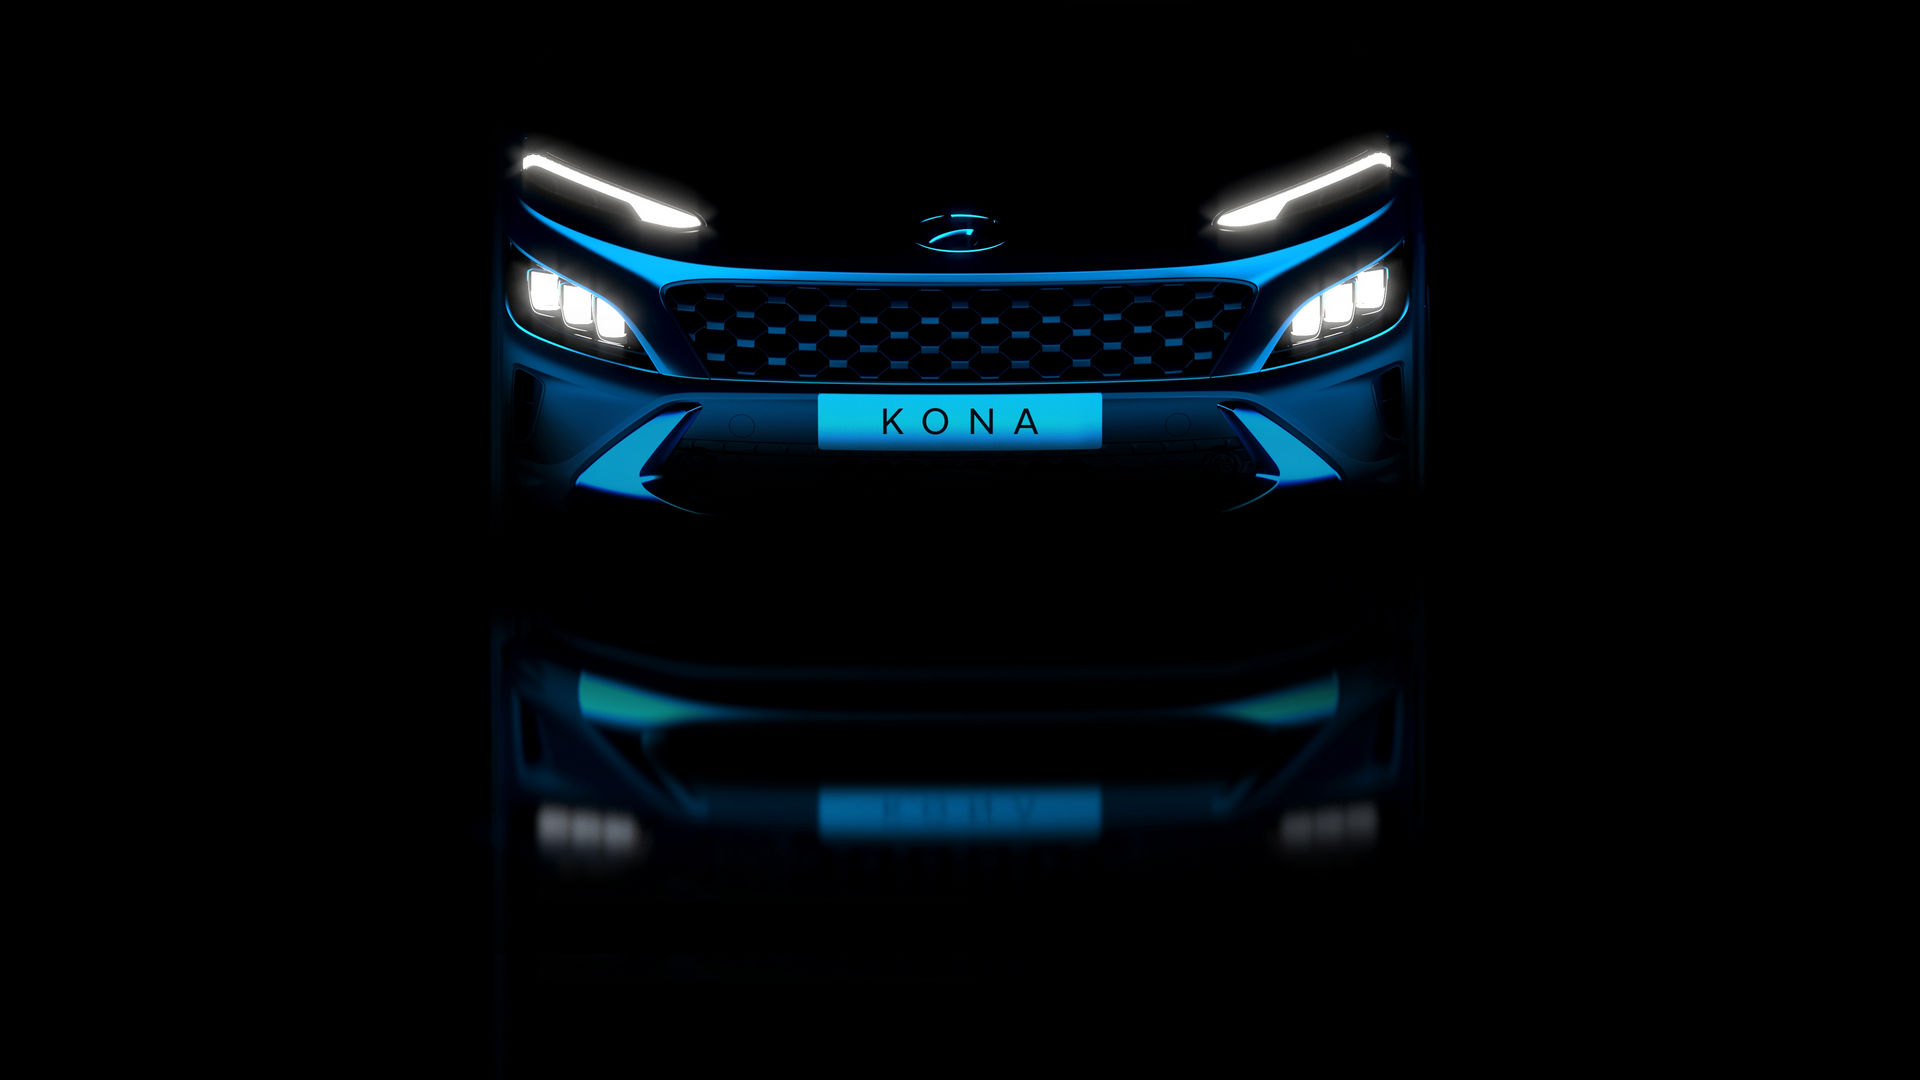 Makyajlı Hyundai Kona'nın ön tasarımını gösteren ipucu görseli paylaşıldı